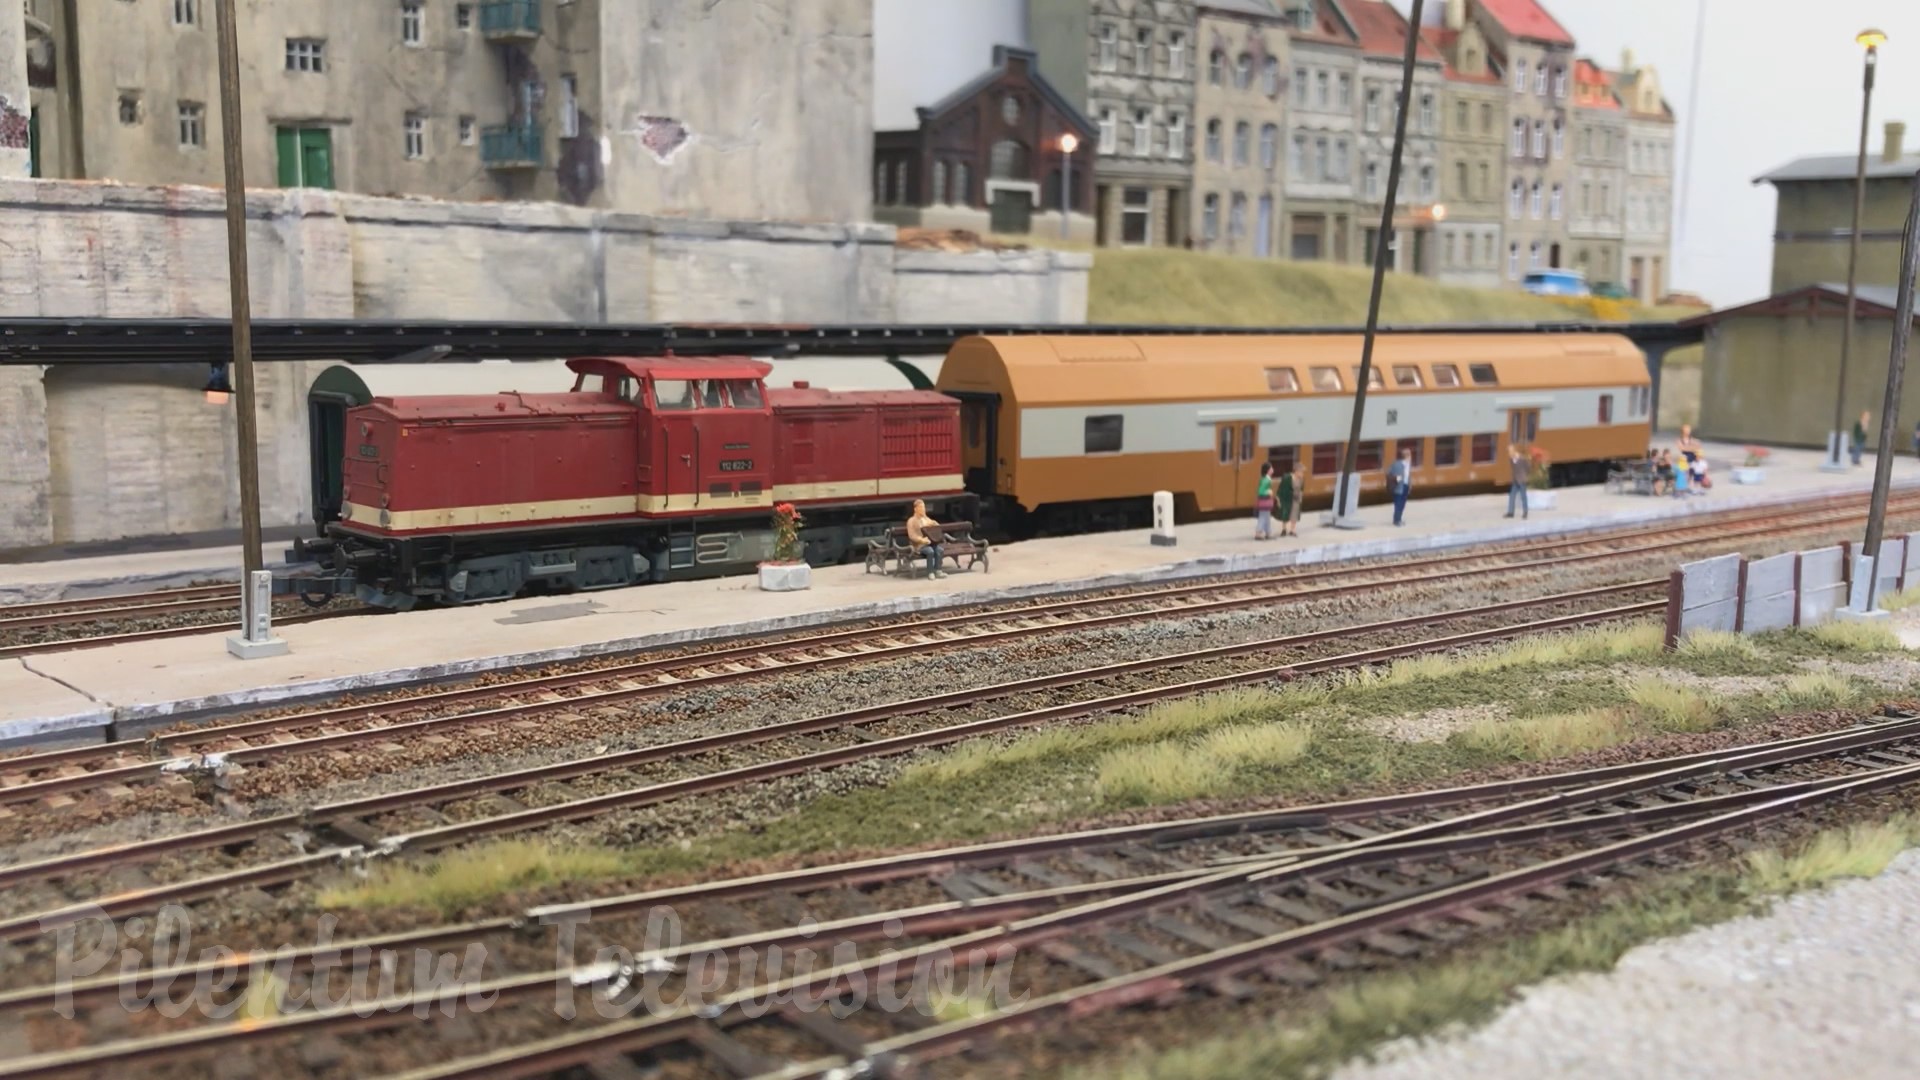 Masterpiece of Rail Transport Modeling: An East German Model Railway Layout in HO scale